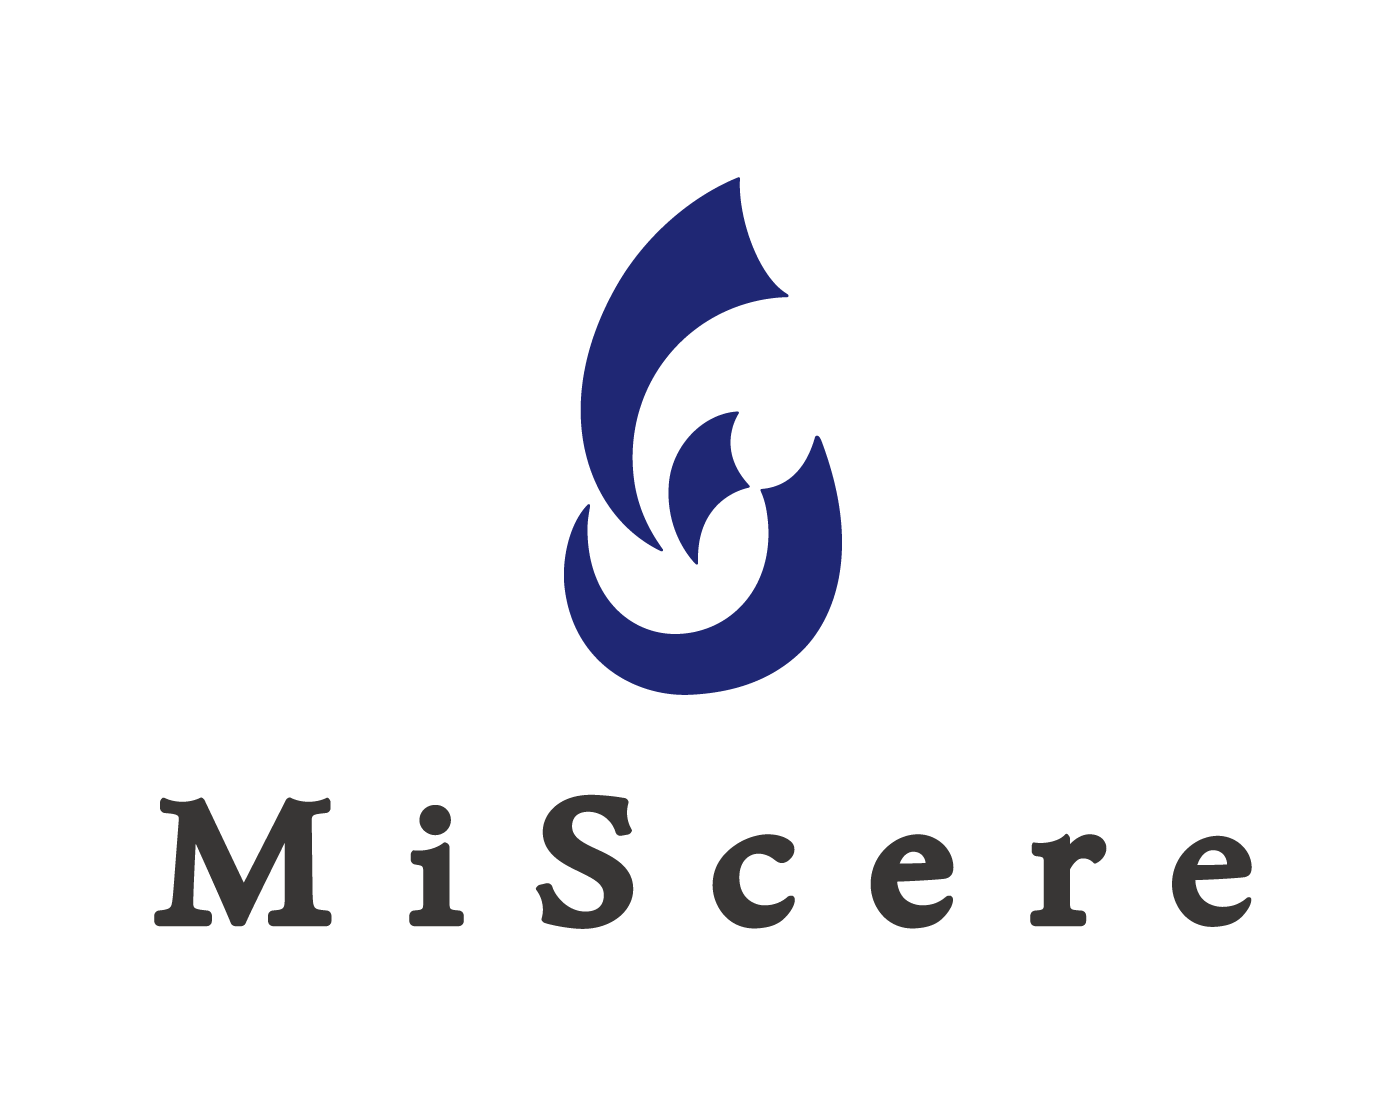 株式会社MiScere様との顧問契約締結のお知らせ